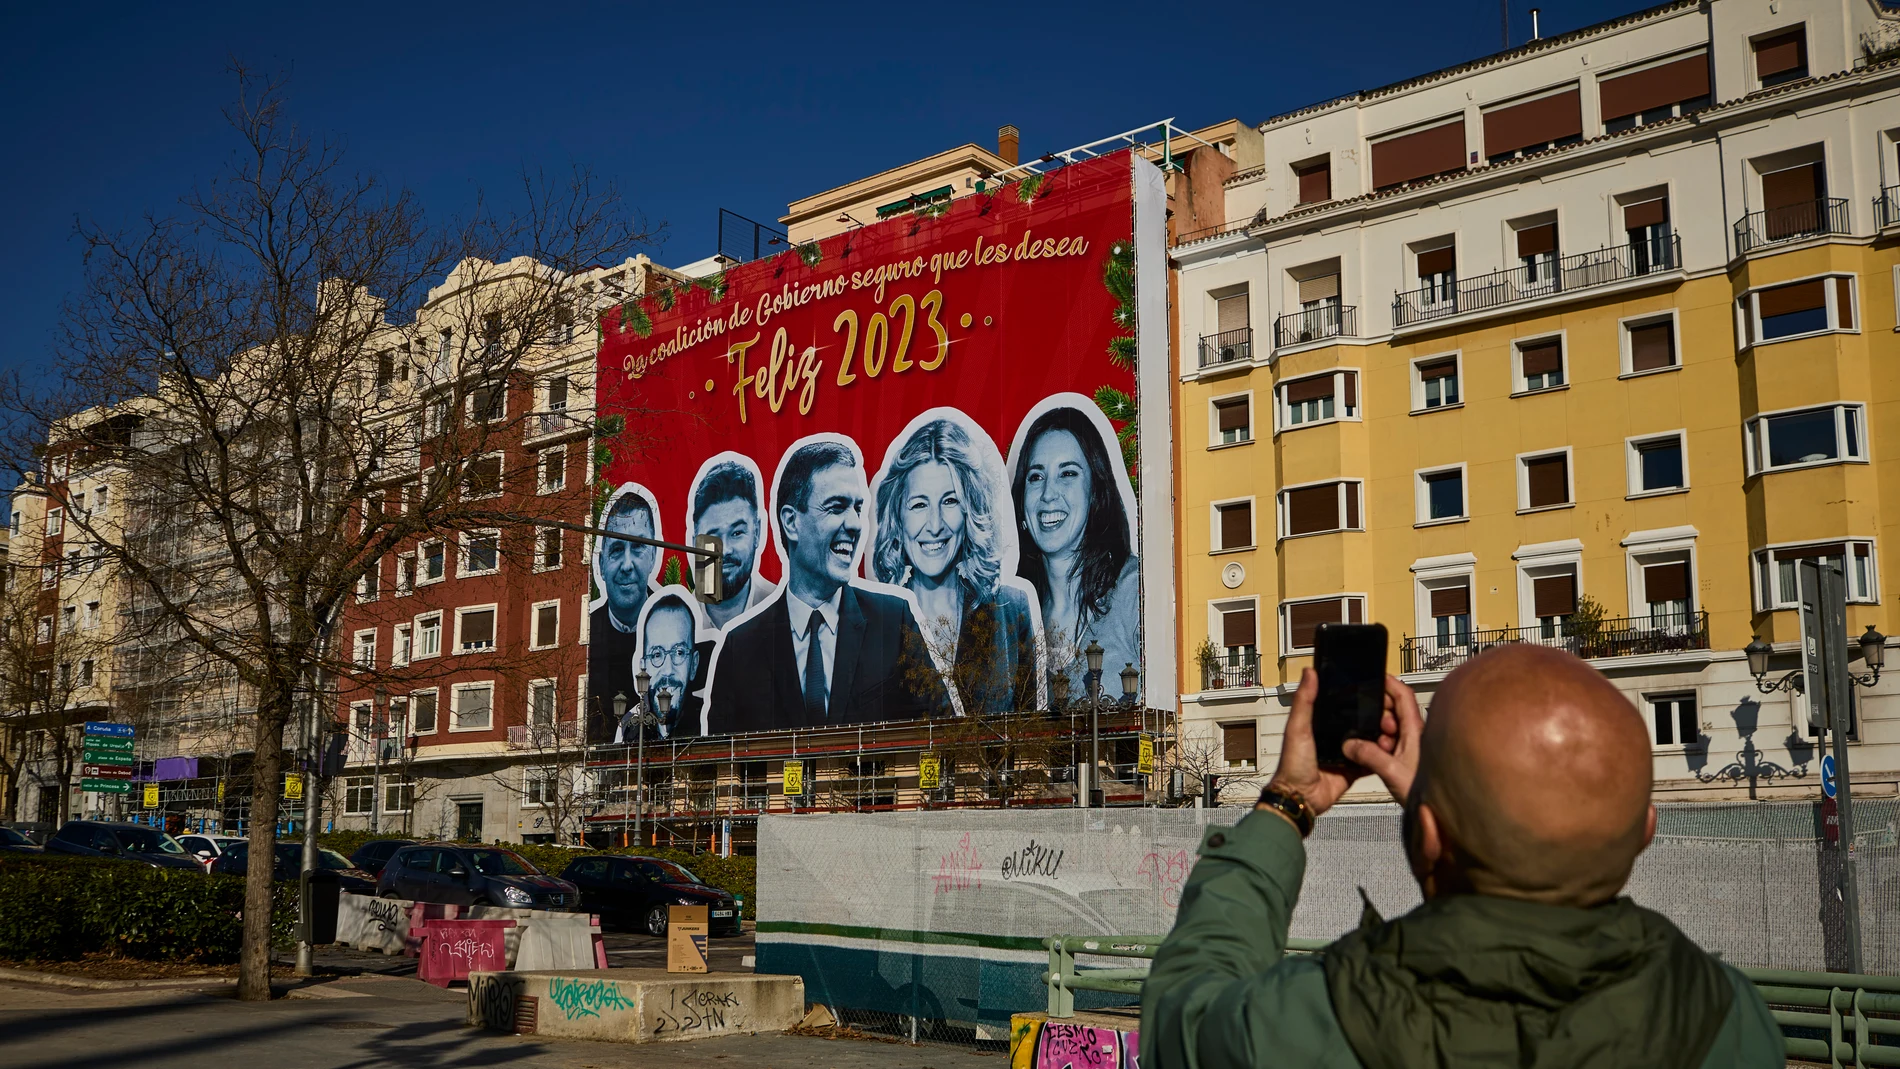 Cartel colgado en un edificio de la calle Ferraz de Madrid en alusiones al Gobierno de coalición del PSOE con el lema “La coalición de gobierno seguro que les desea Feliz 2023”